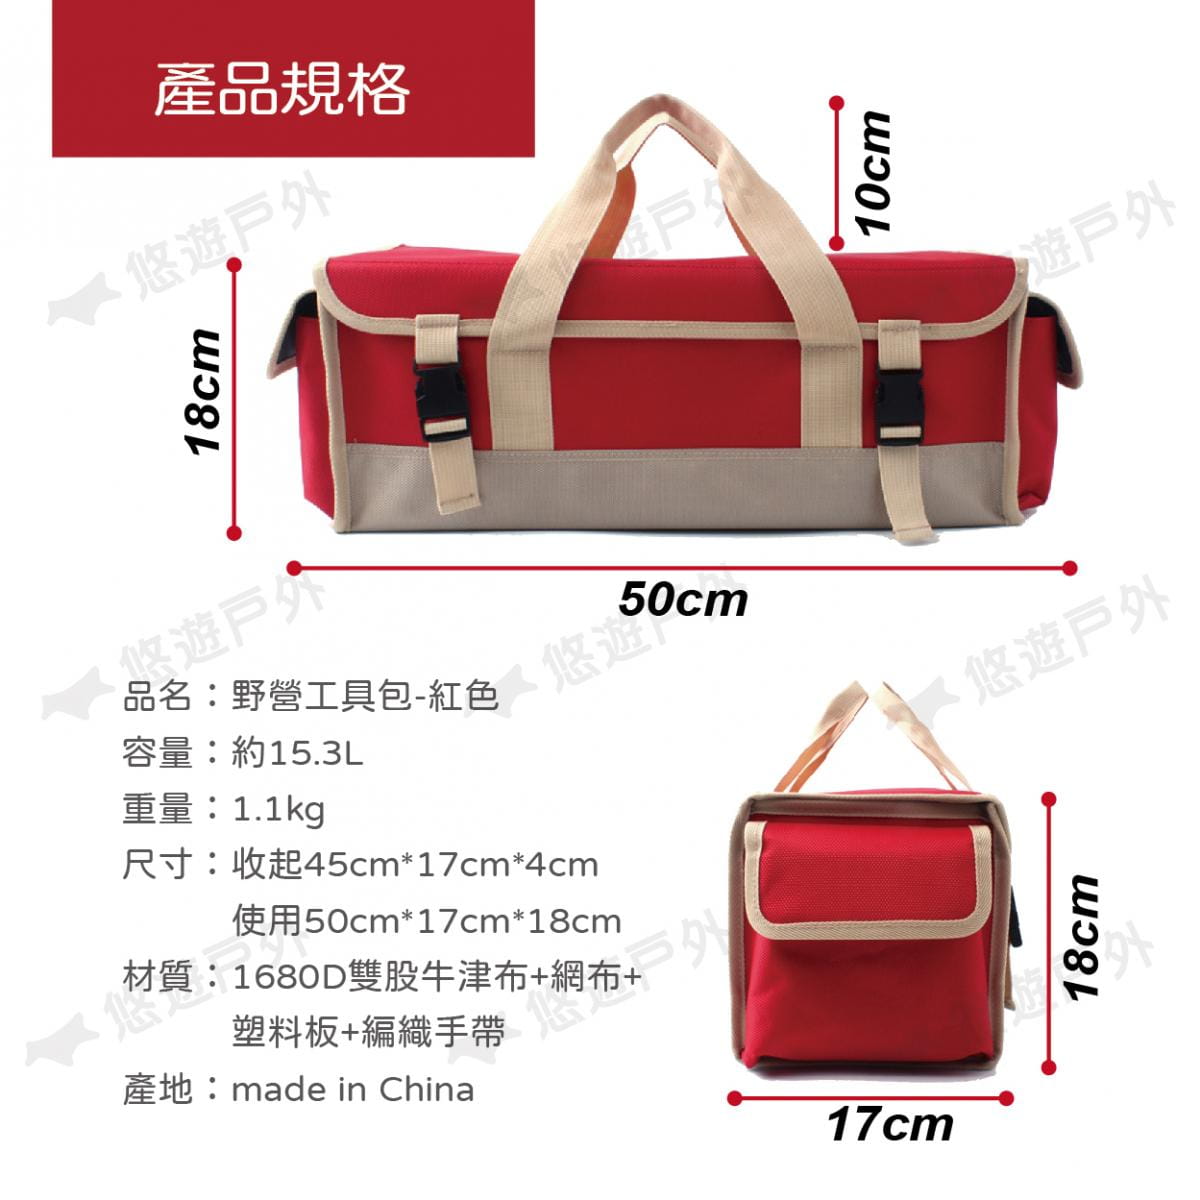 【CLS】韓國 牛津布大容量裝備工具袋 紅色 1680D 牛津布 裝備袋 工具包 工具袋 居家 露營 5